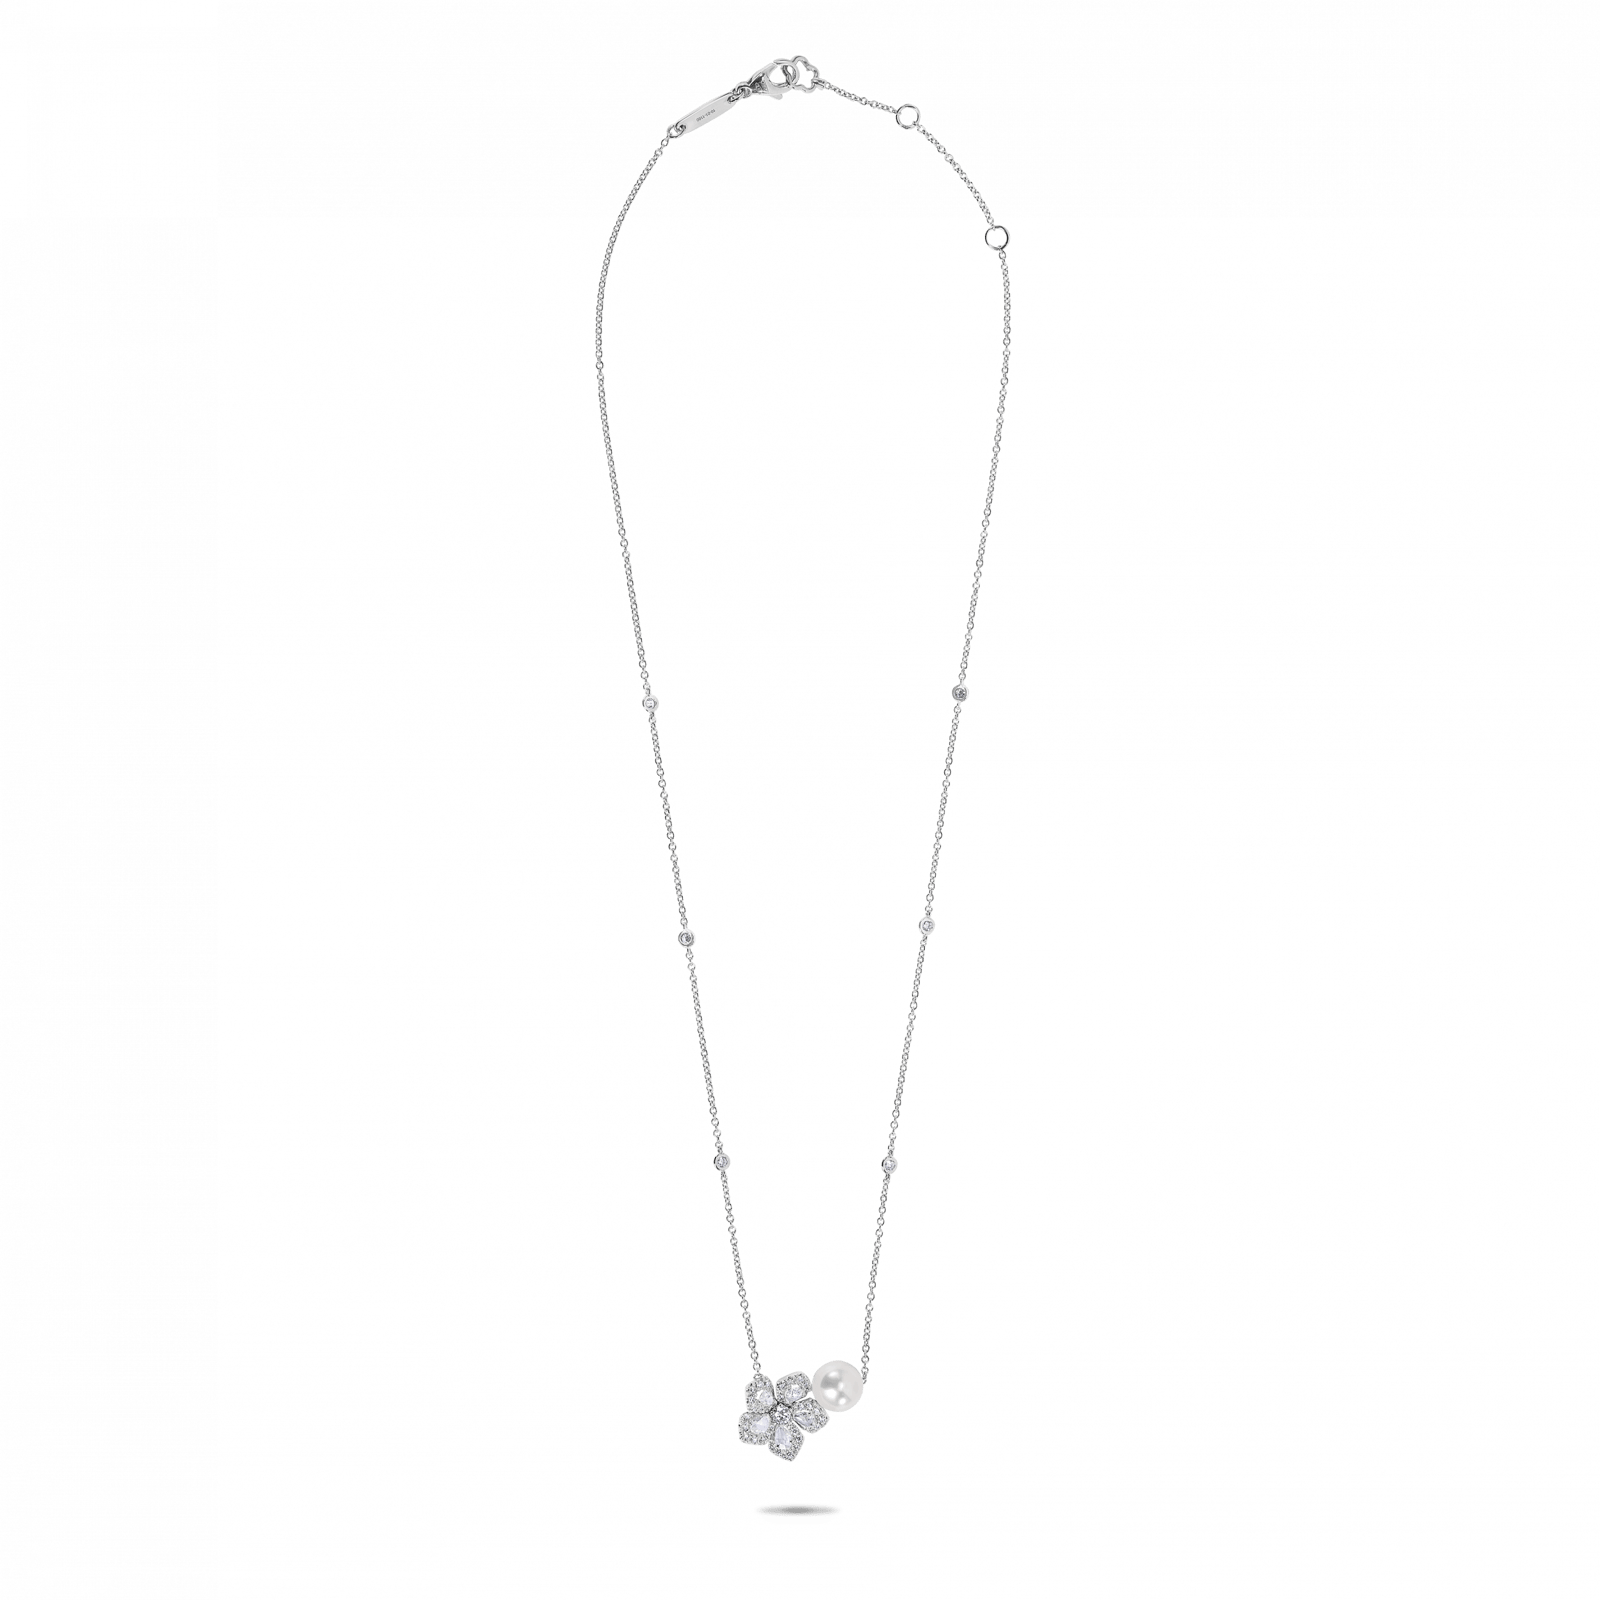 Miss daisy pearl pendant from david morris